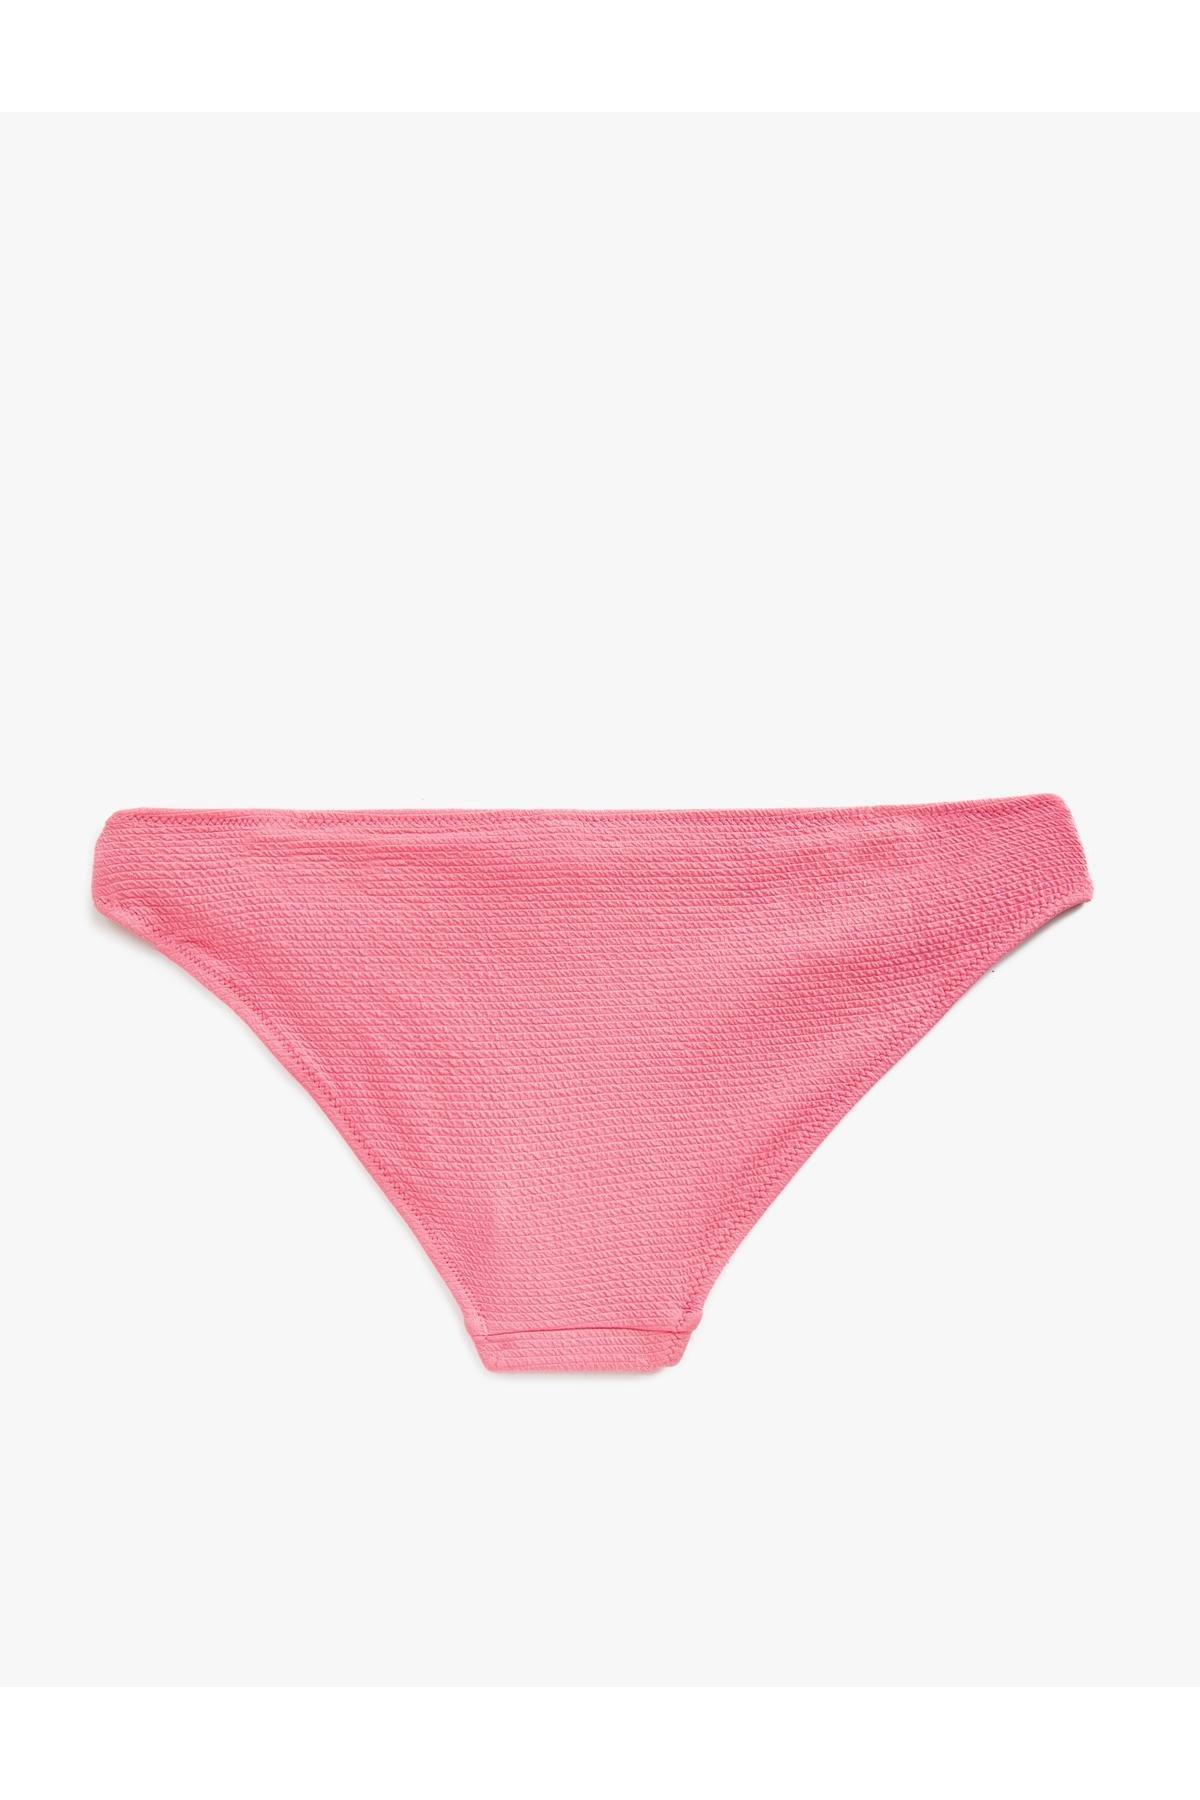 Koton - Pink Piping Detail Bikini Bottom